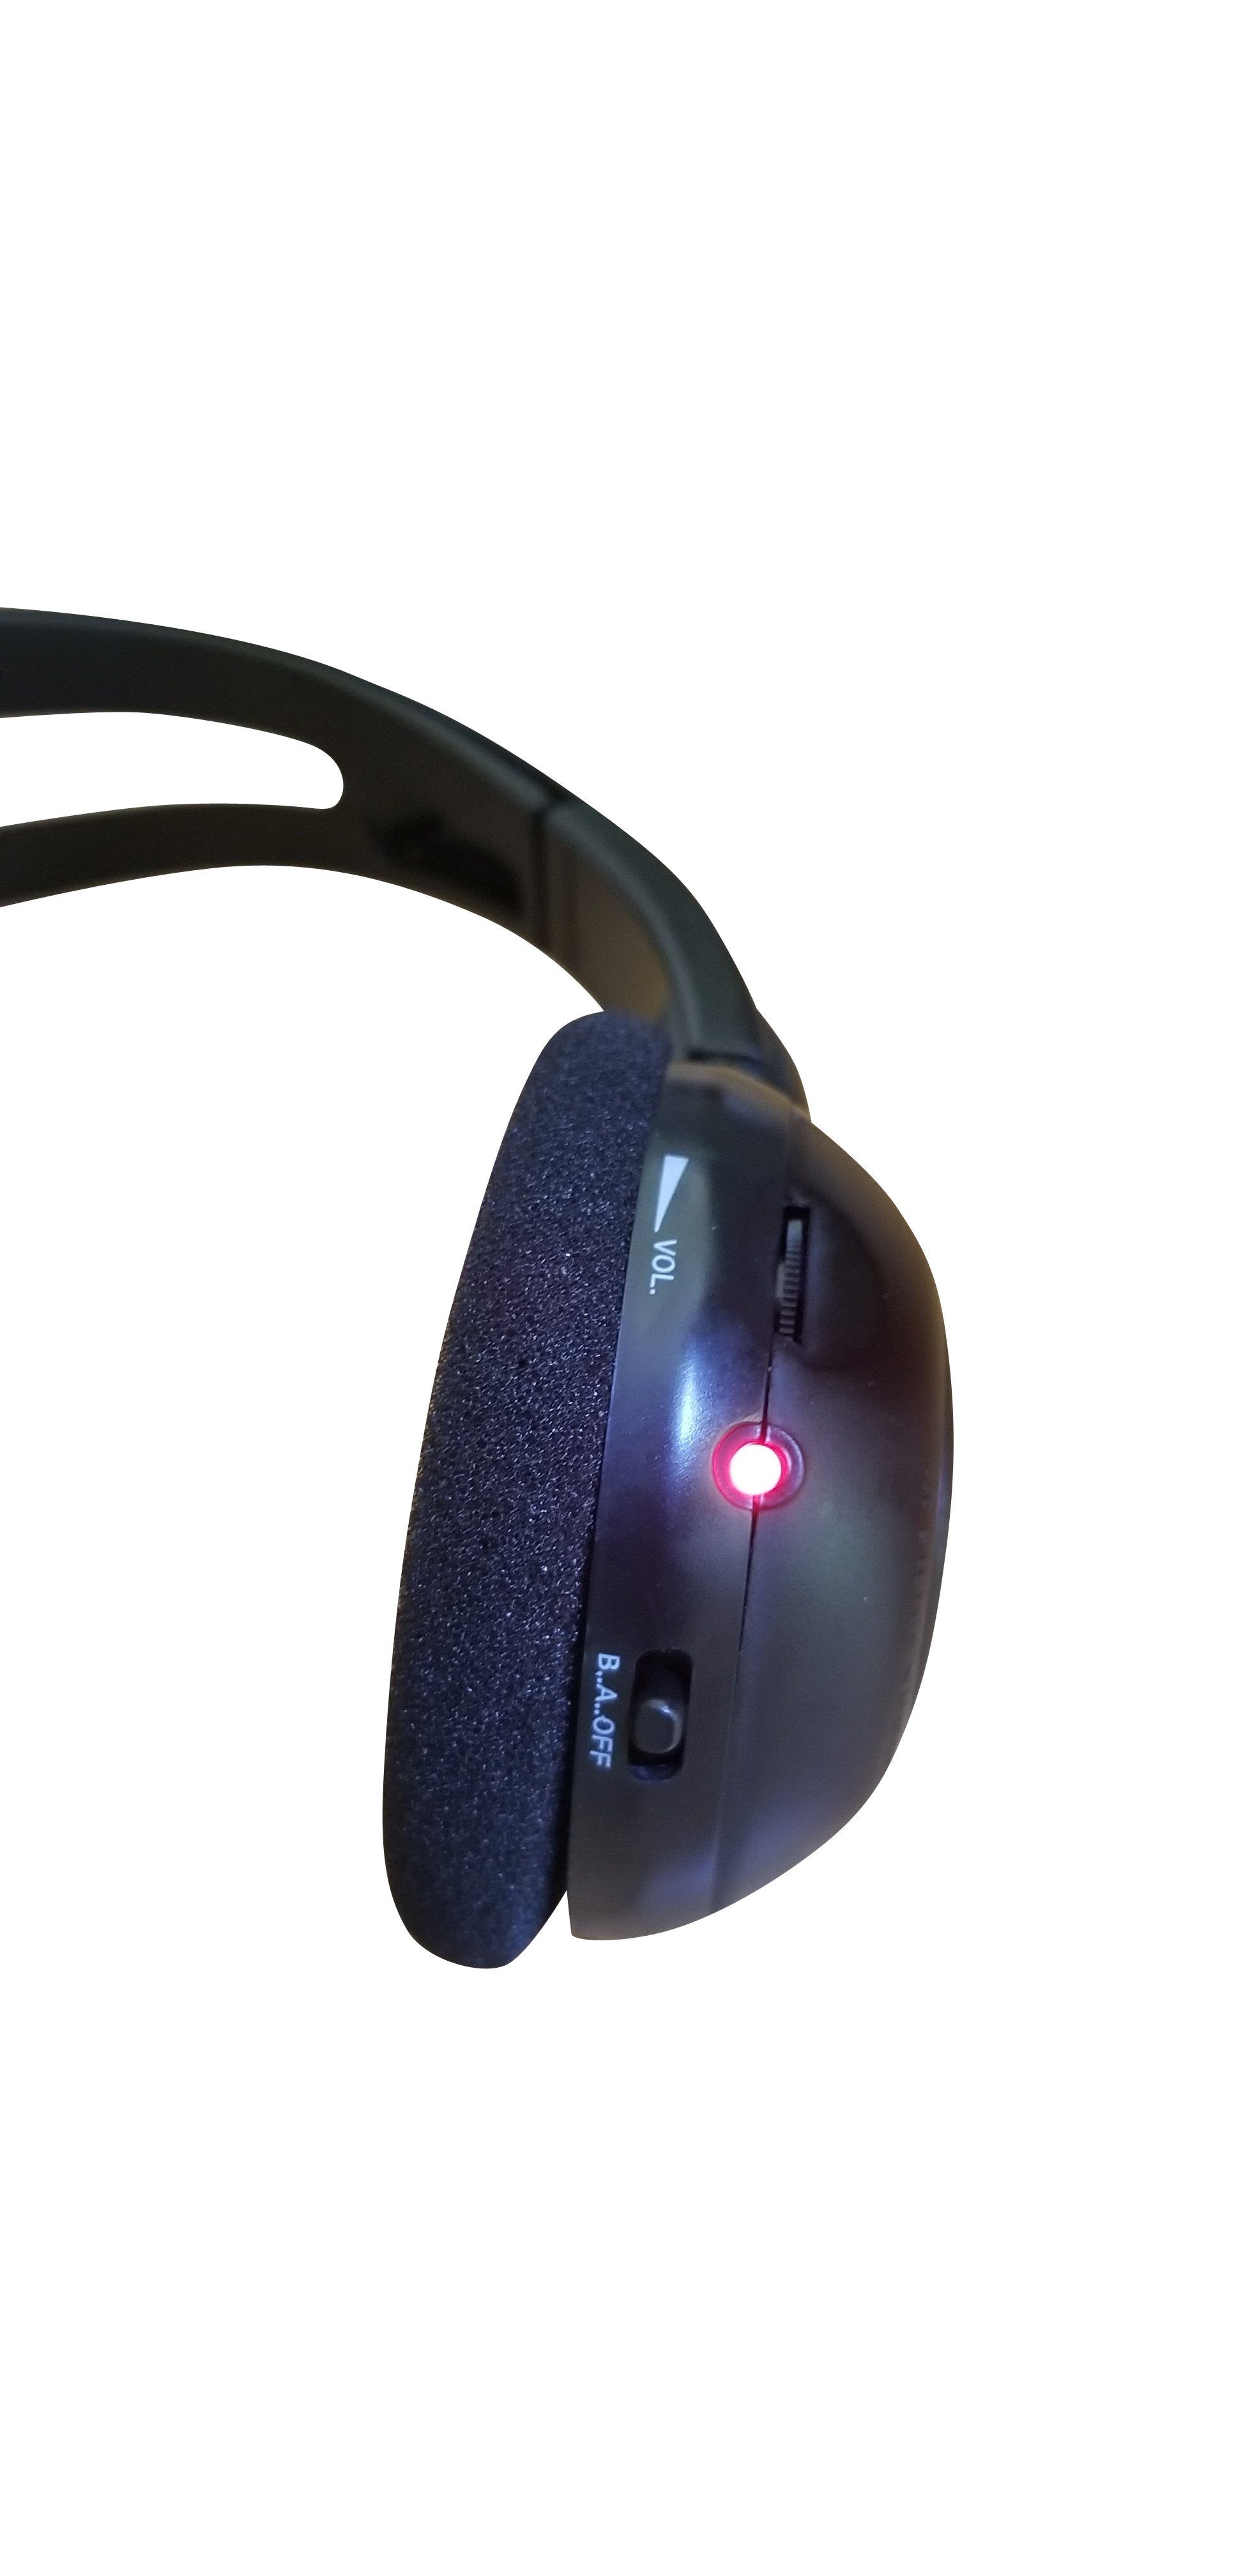 2013 GMC Yukon-XL Wireless DVD Headphone